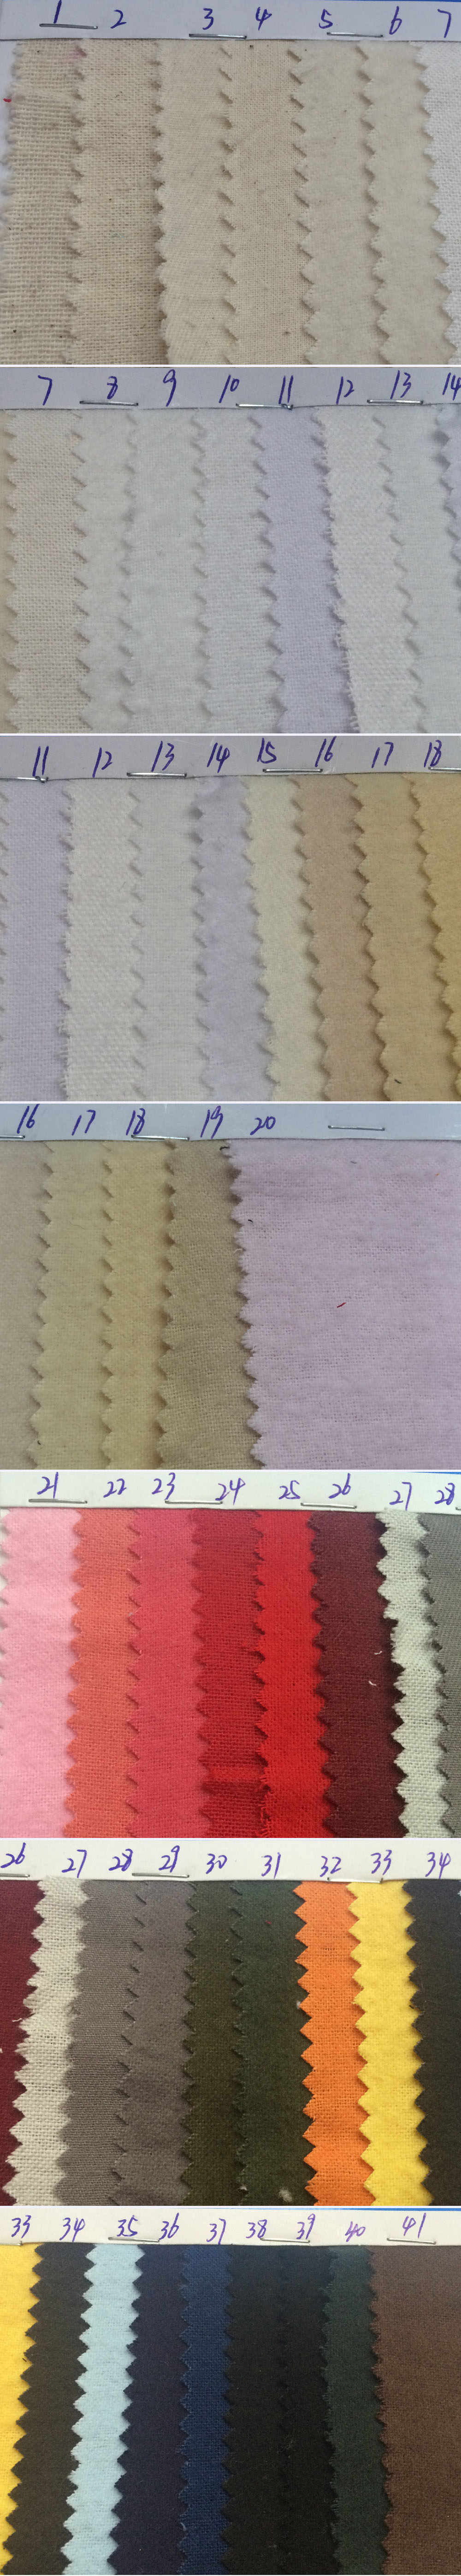 Velvet cotton fabric color chart